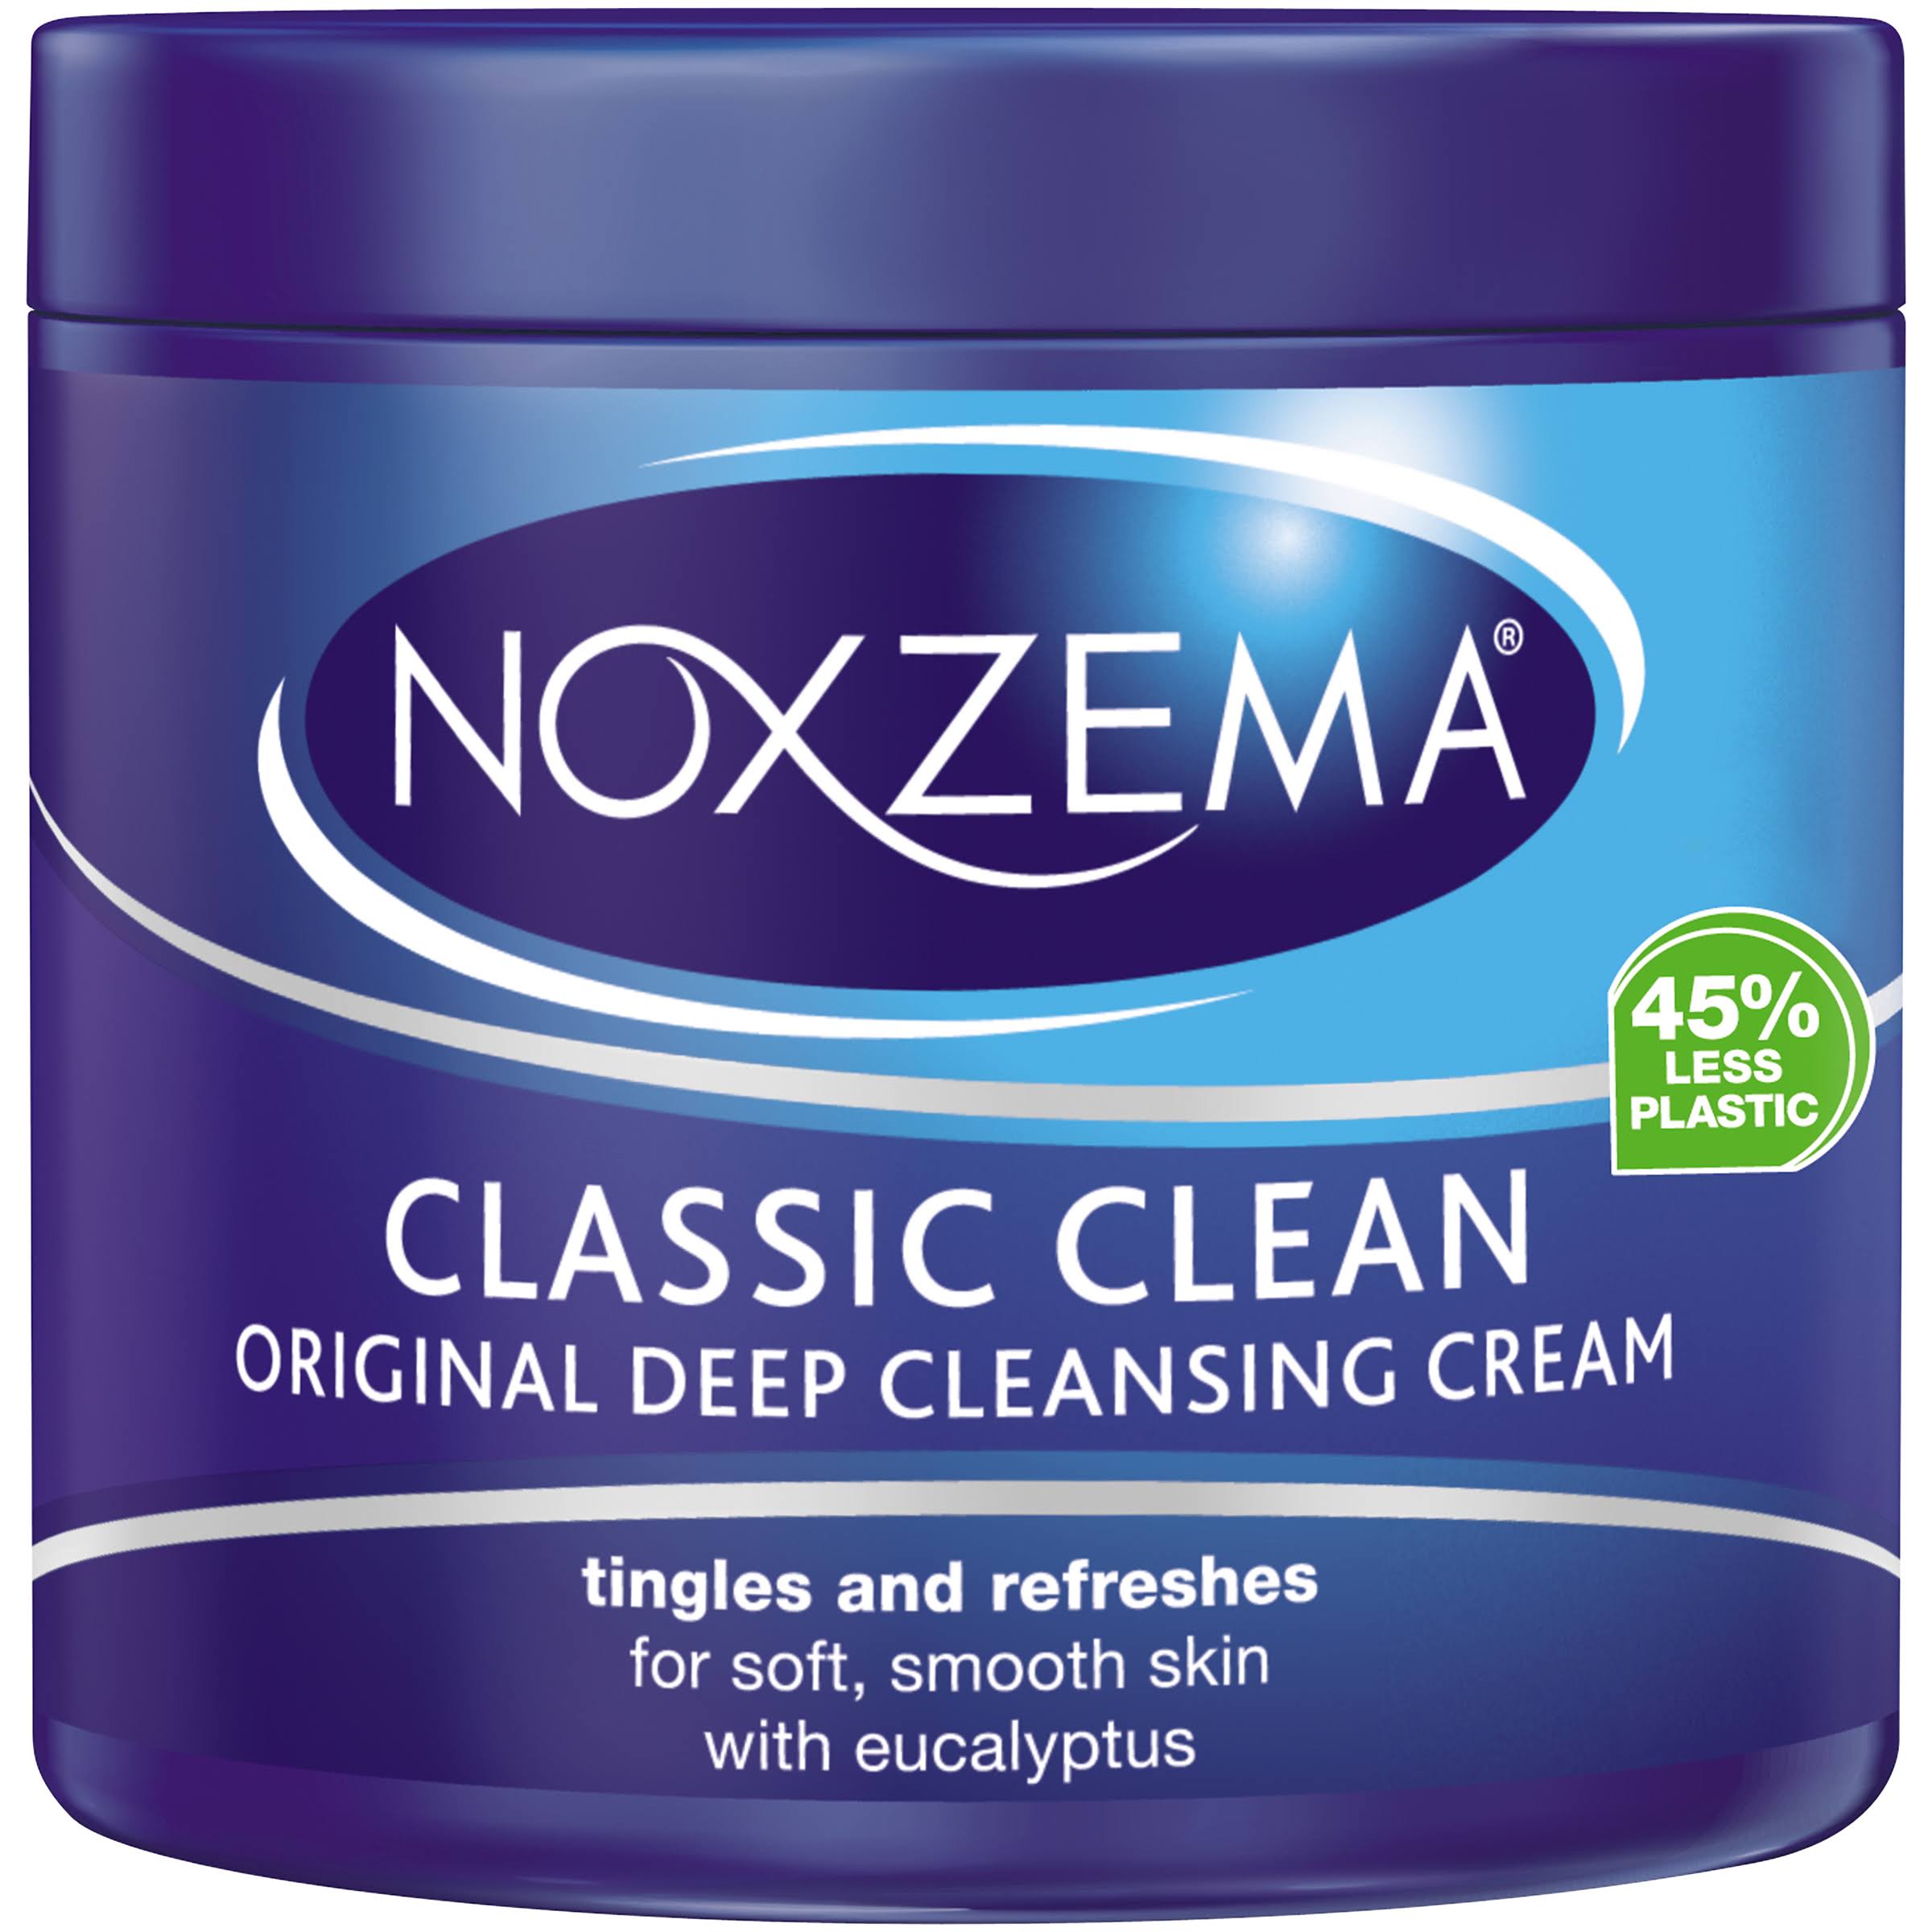 Noxzema Original Deep Cleansing Cream - 12oz